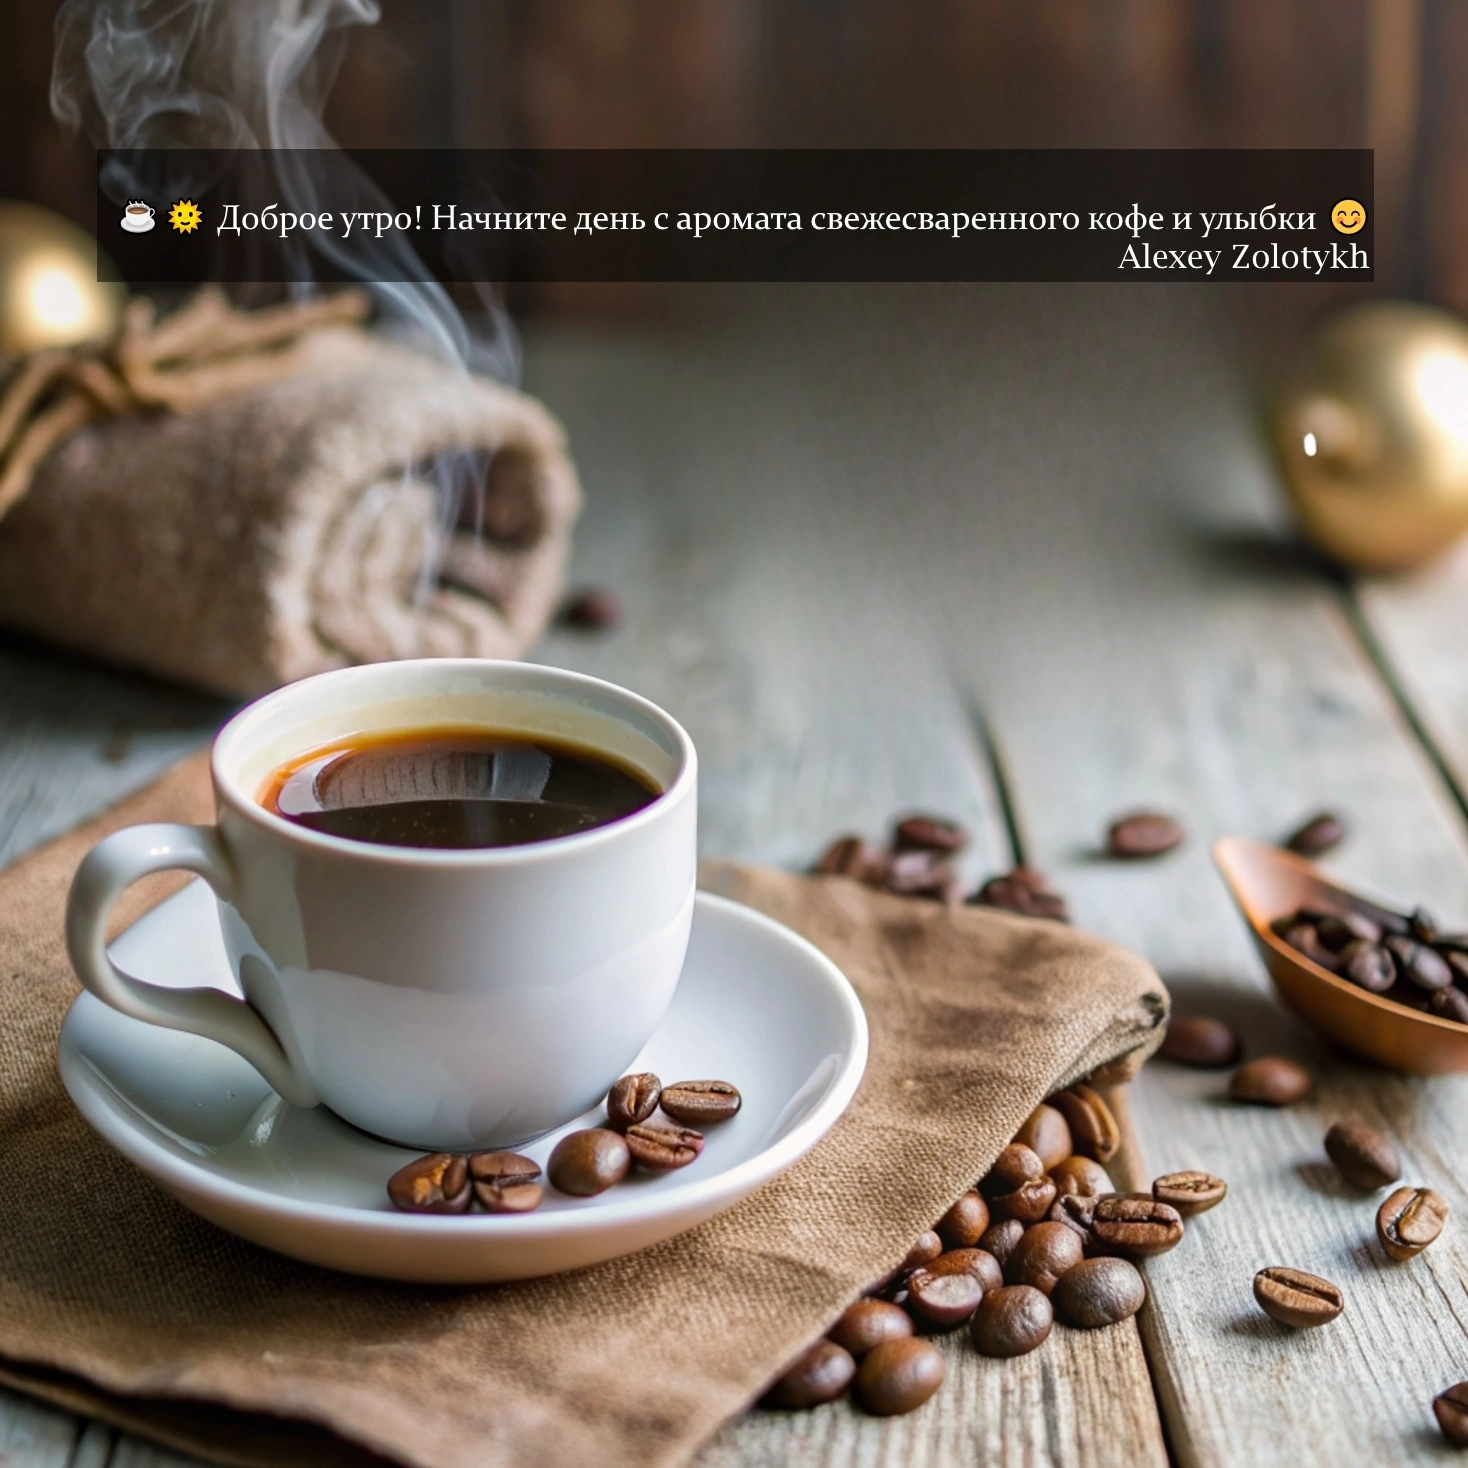 ☕️🌞 Доброе утро! Начните день с аромата свежесваренного кофе и улыбки 😊